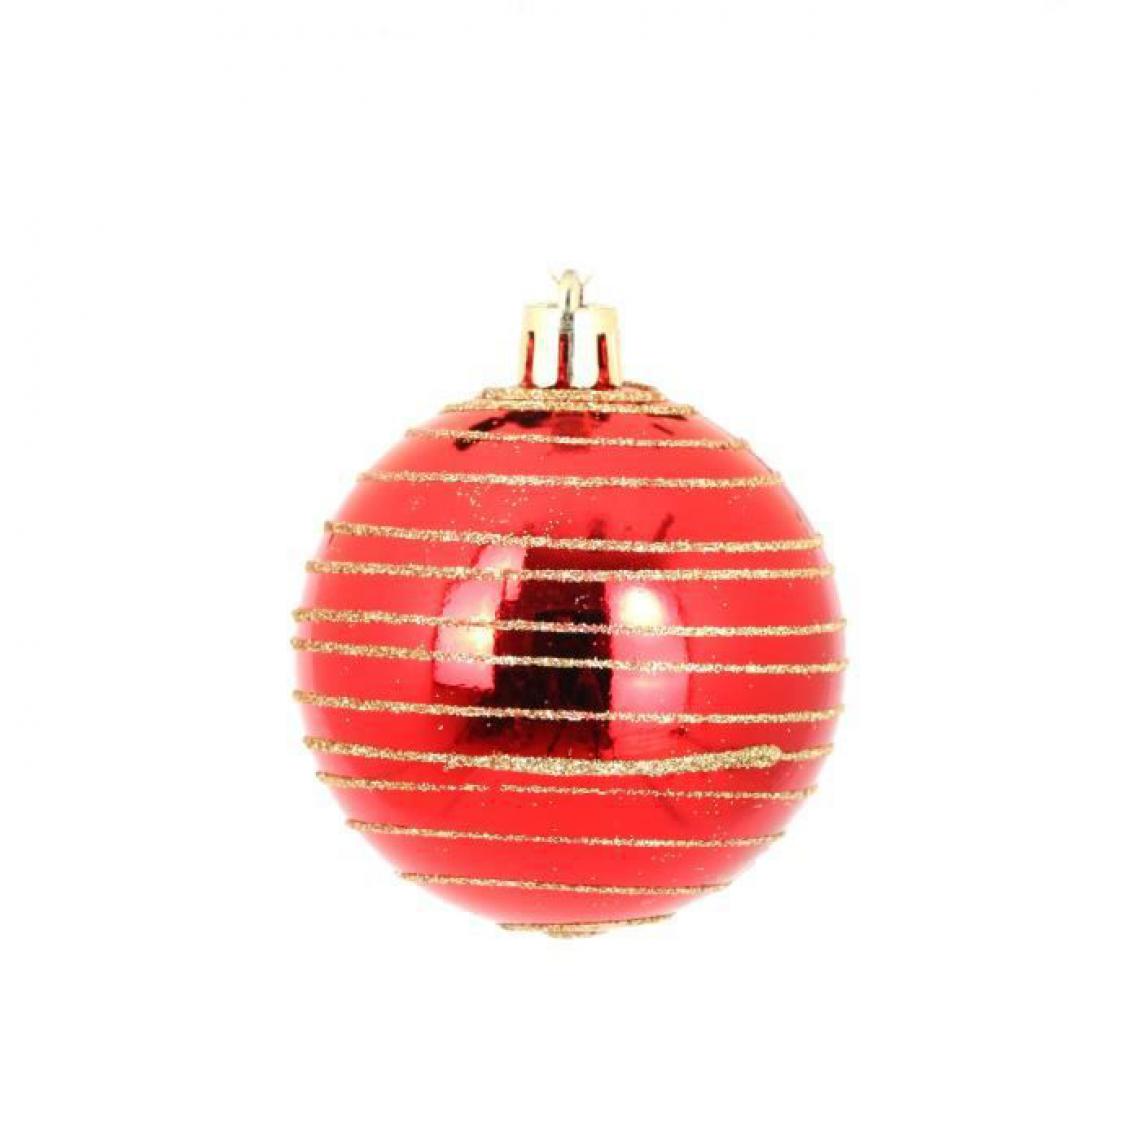 Cstore - AUTOUR DE MINUIT - Set de 6 boules décorées finition brillante - Ø6 cm - Rouge - Décorations de Noël